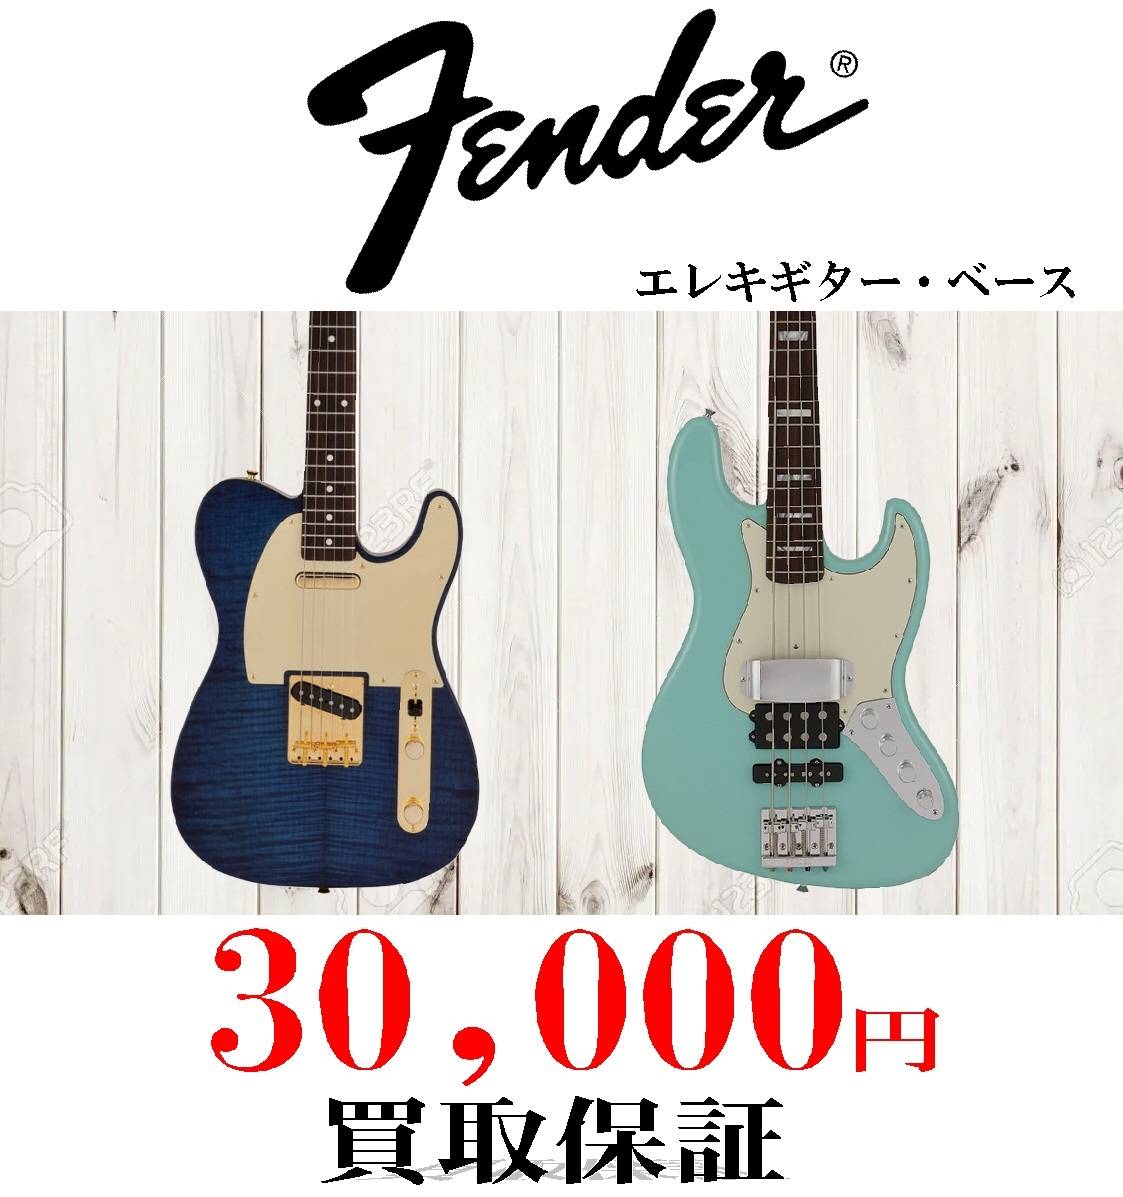 【買取情報】Fender/エレキギター・ベース 買取30,000円保証（お宝創庫 中村店・半田店/２店舗限定）